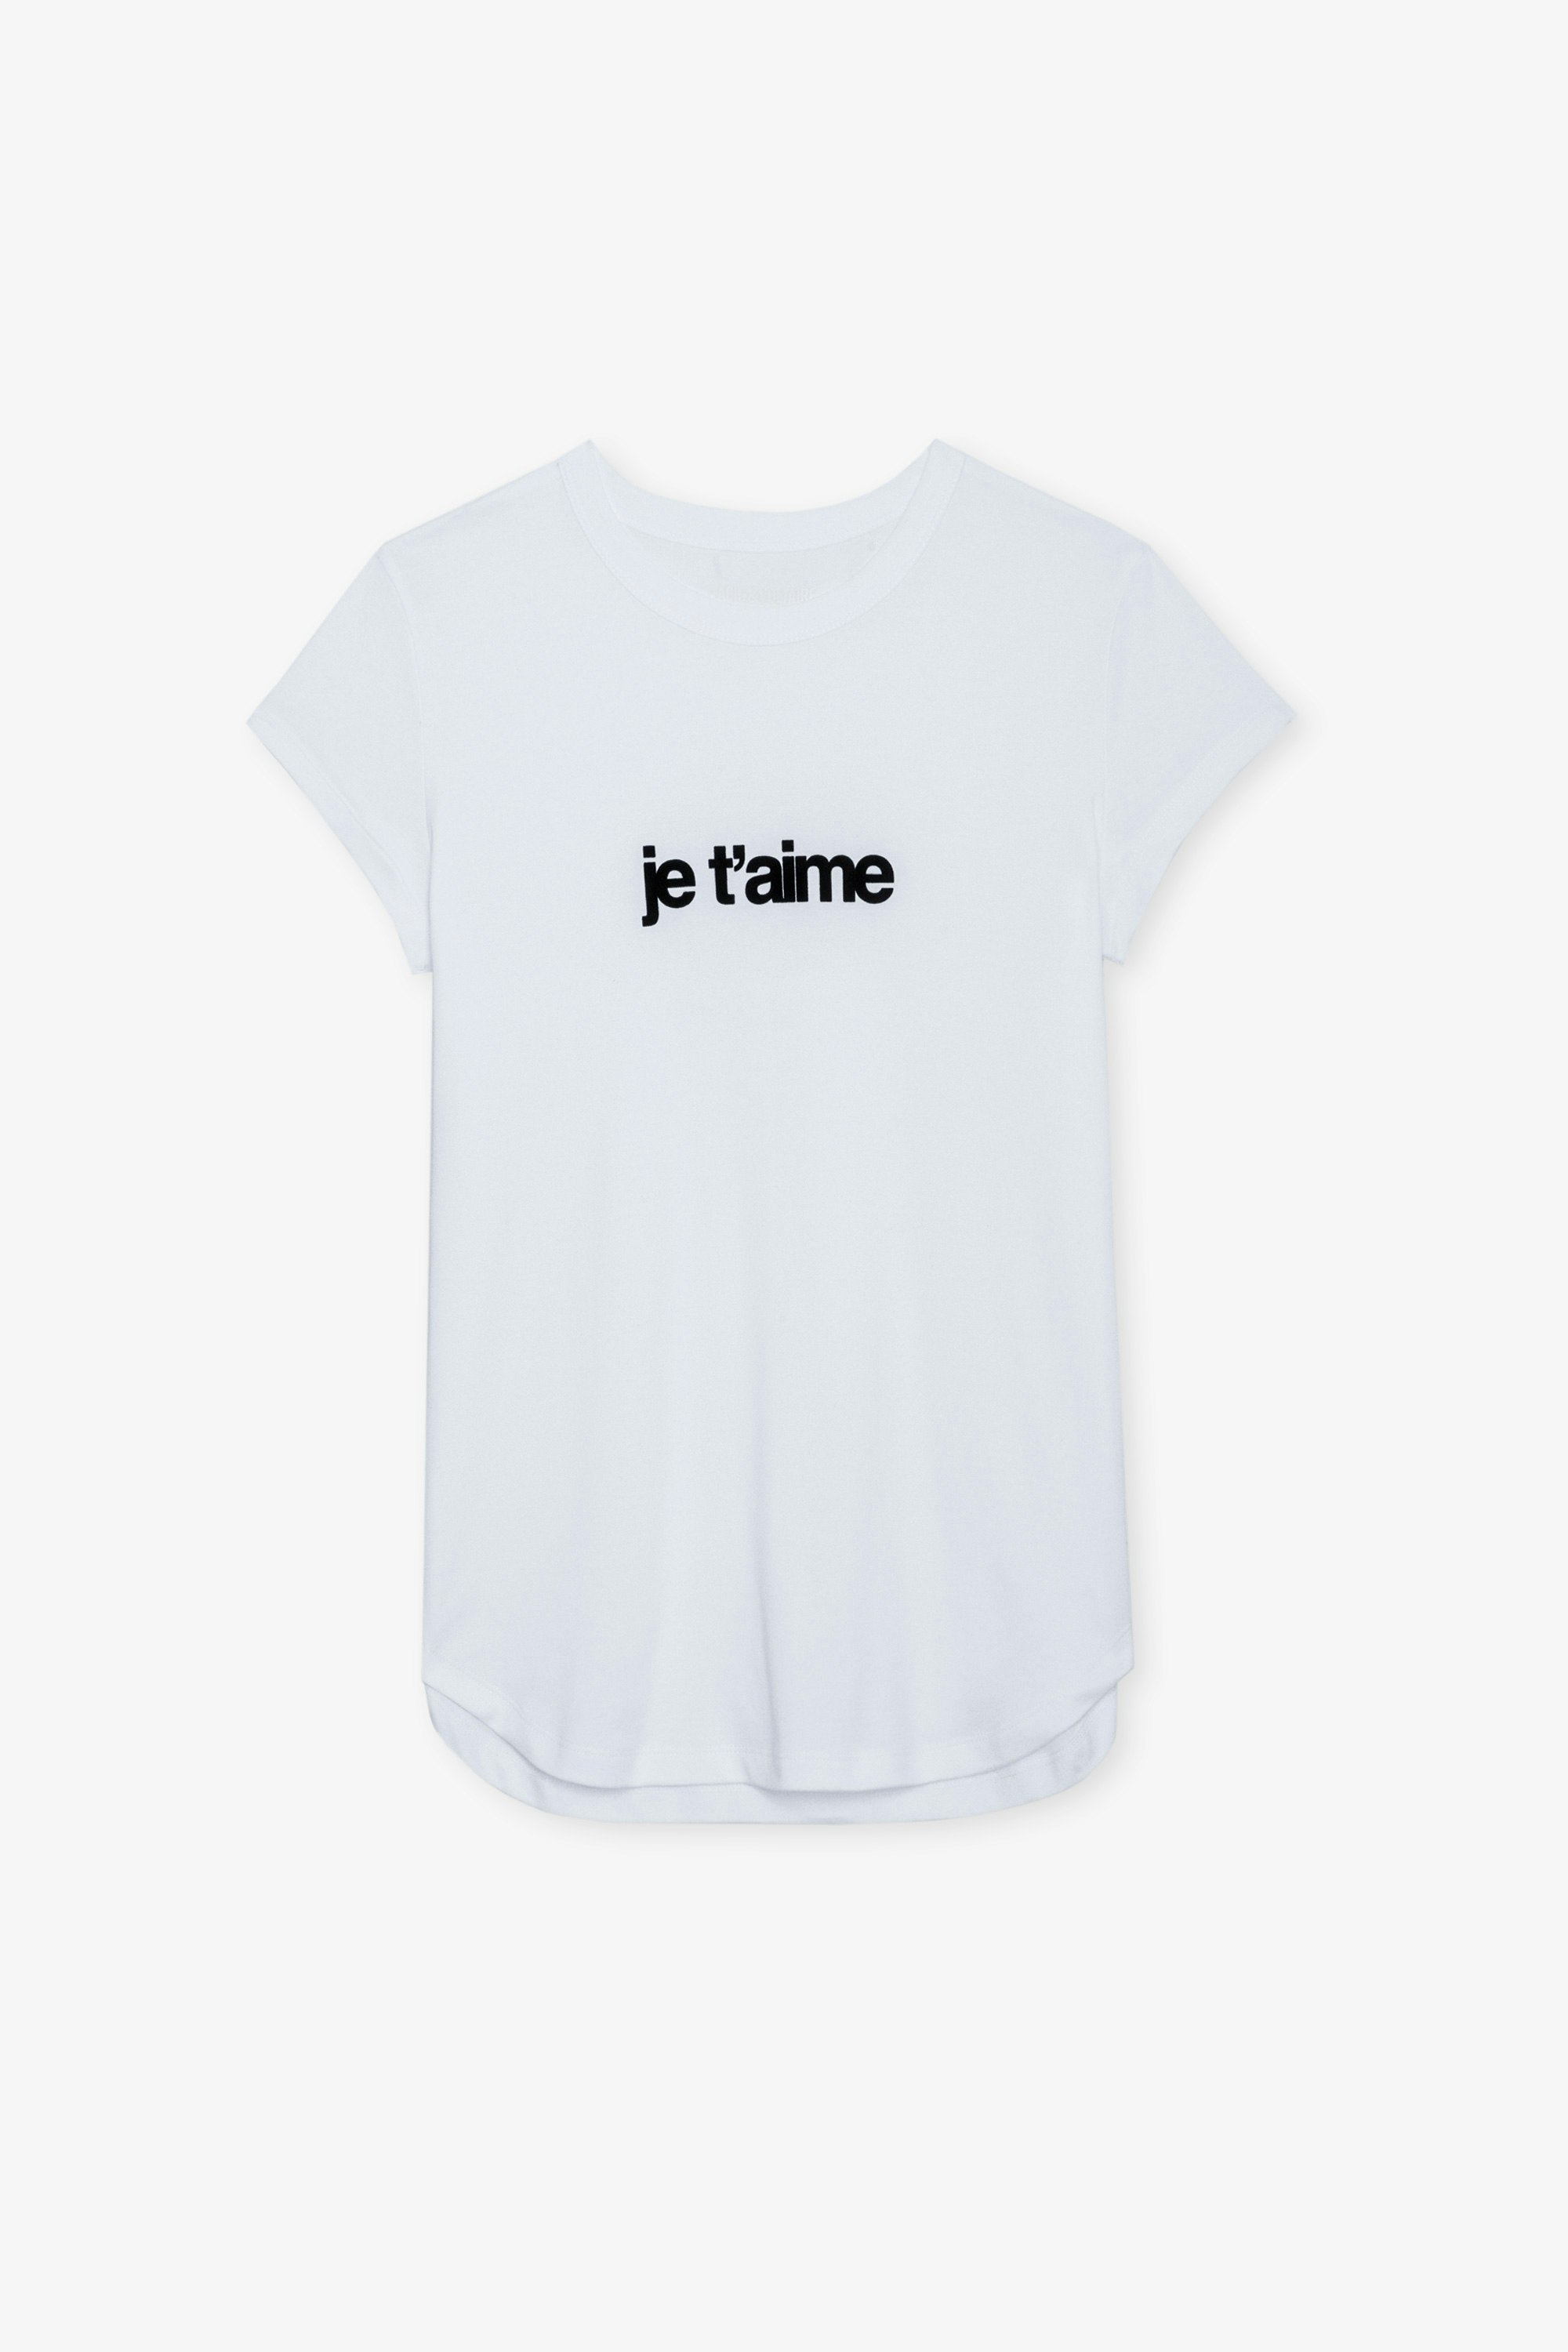 Camiseta Woop Je T'aime - Camiseta blanca de algodón con cuello redondo, mangas cortas y mensaje flocado.